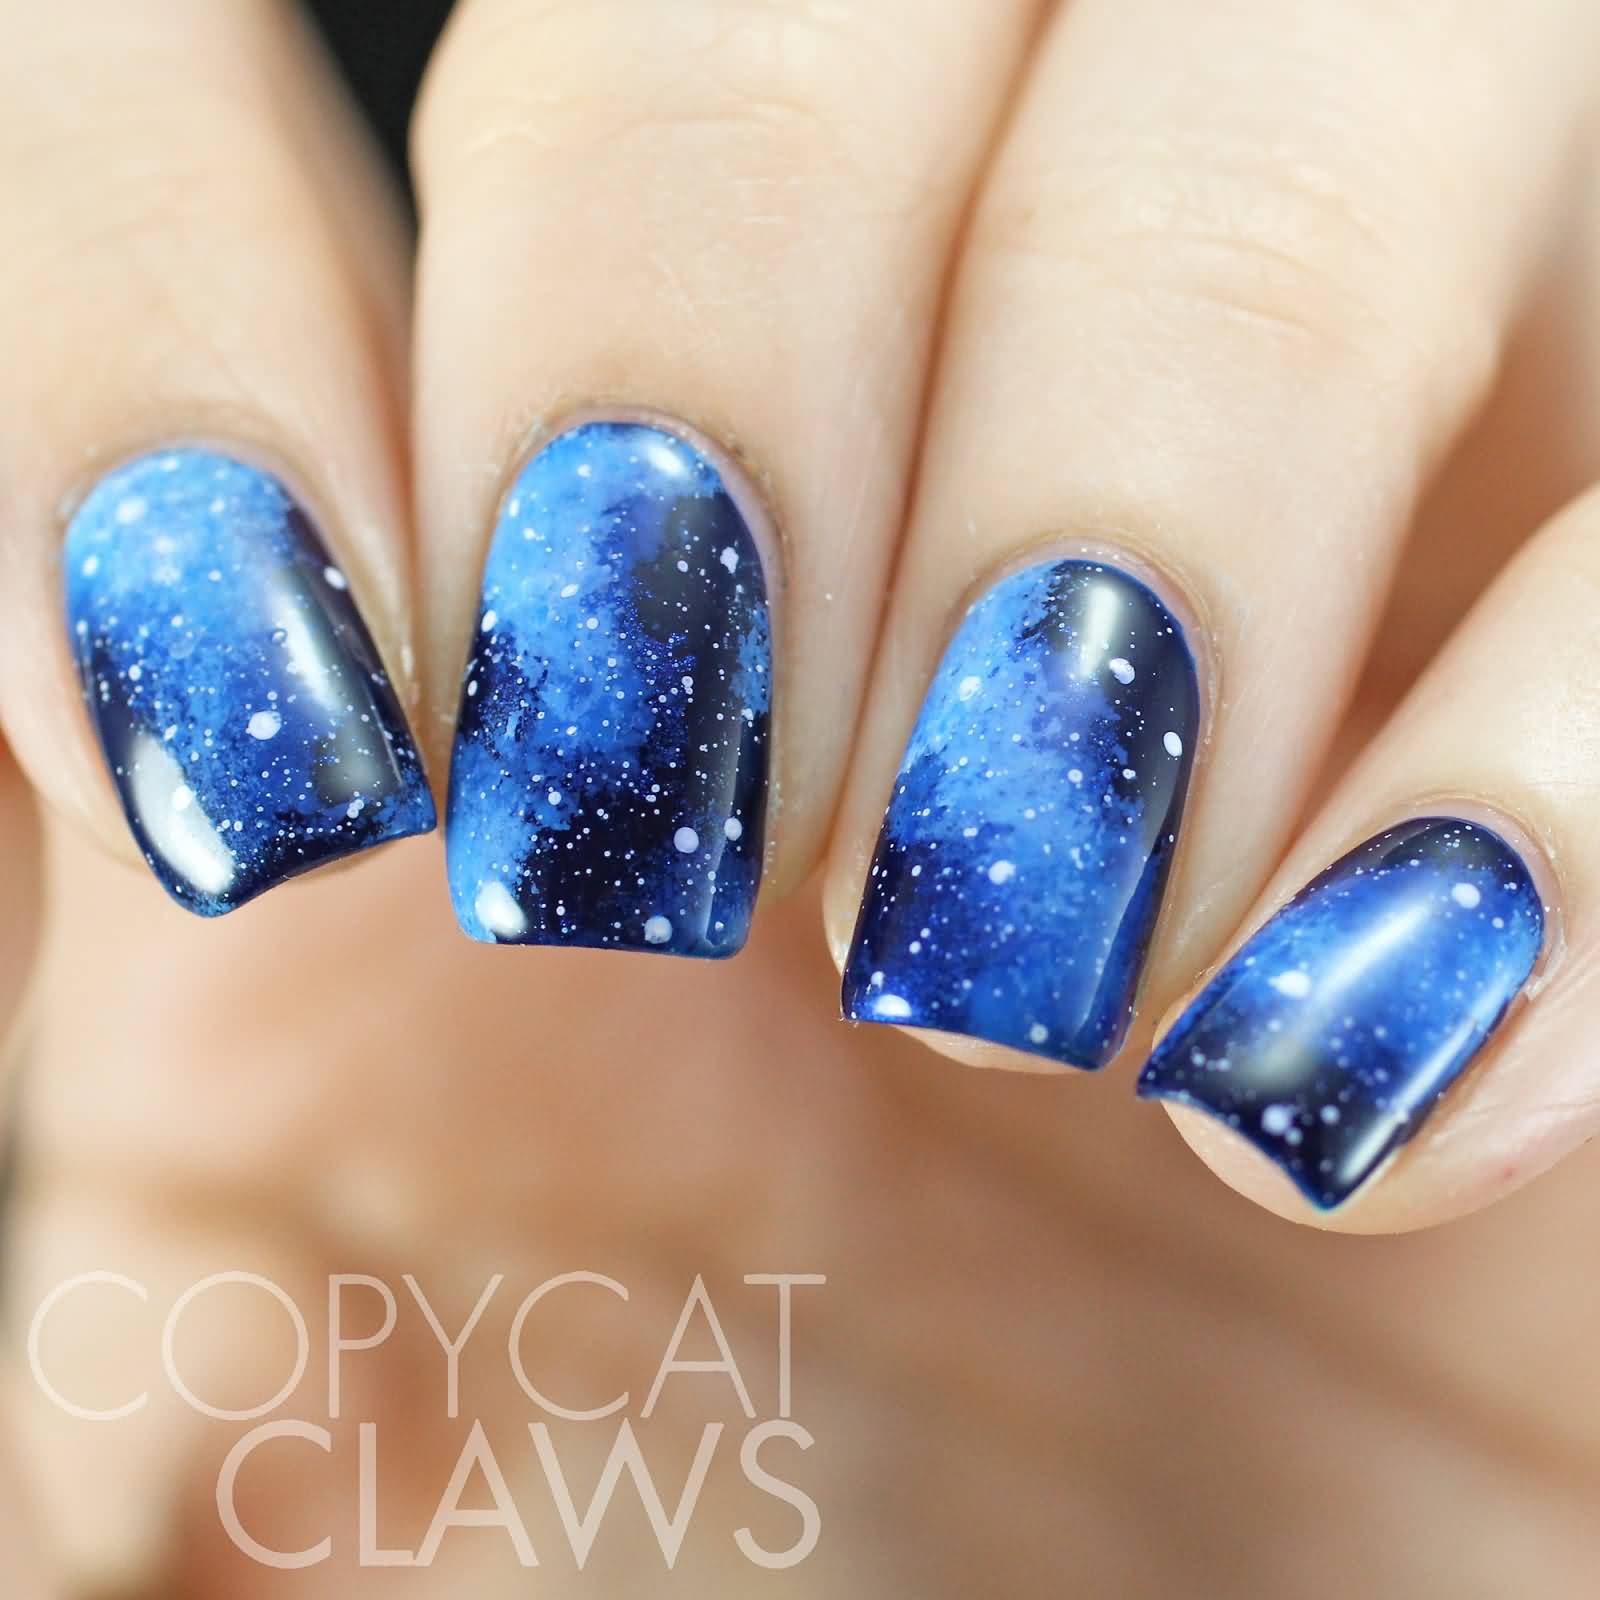 Blue Galaxy Nail Art Design